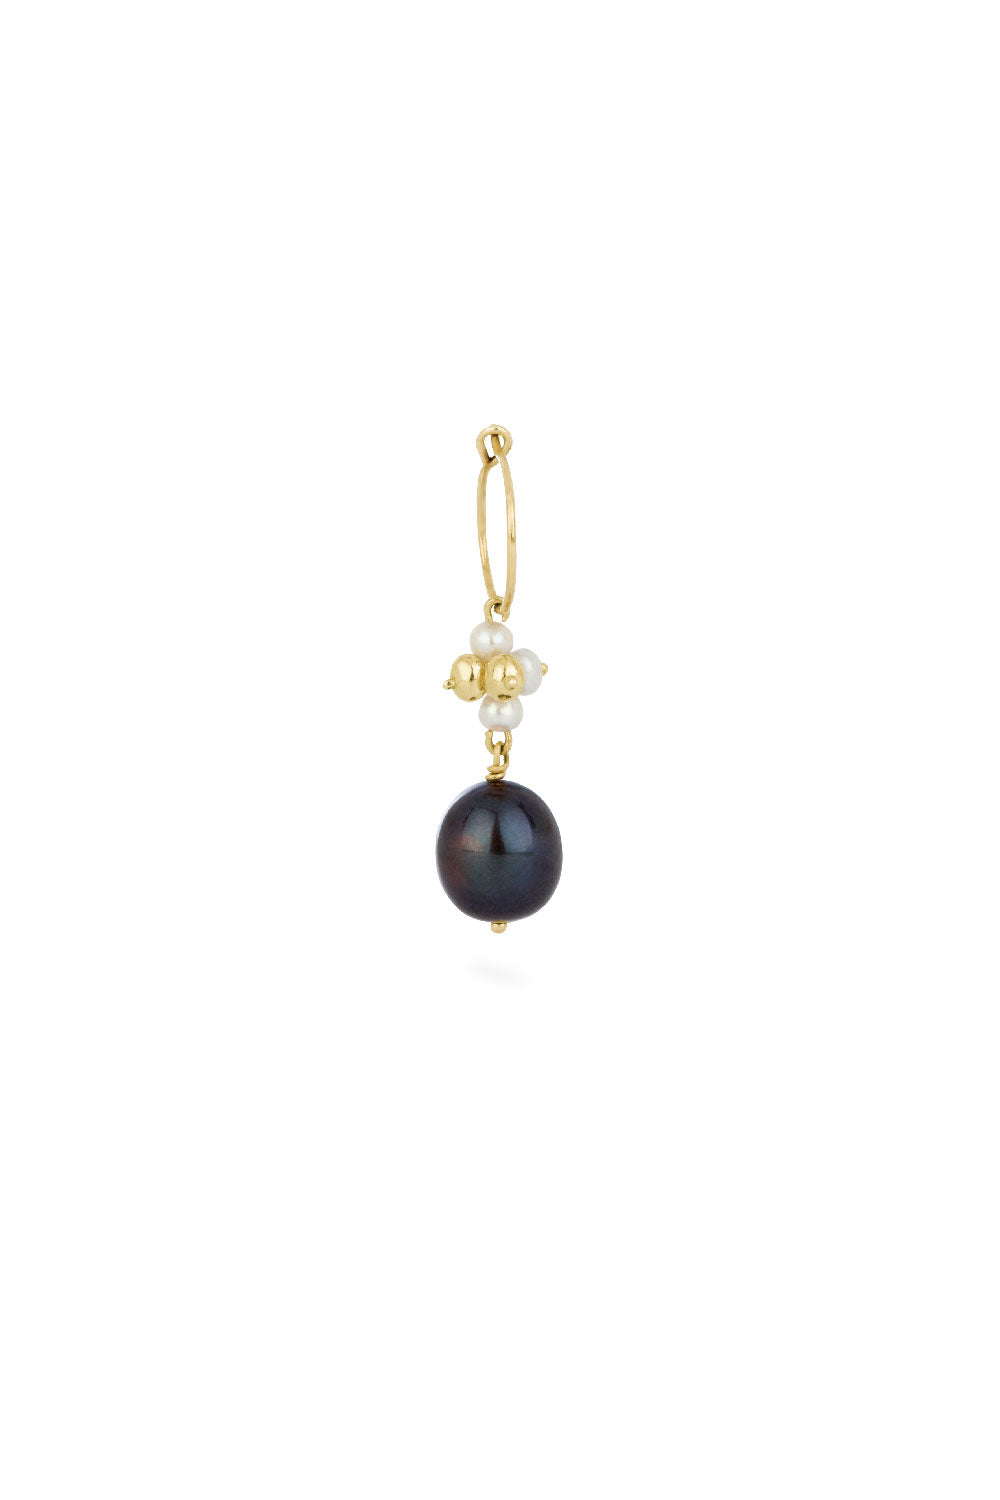 Sea earring - gold hoop with big black pearl